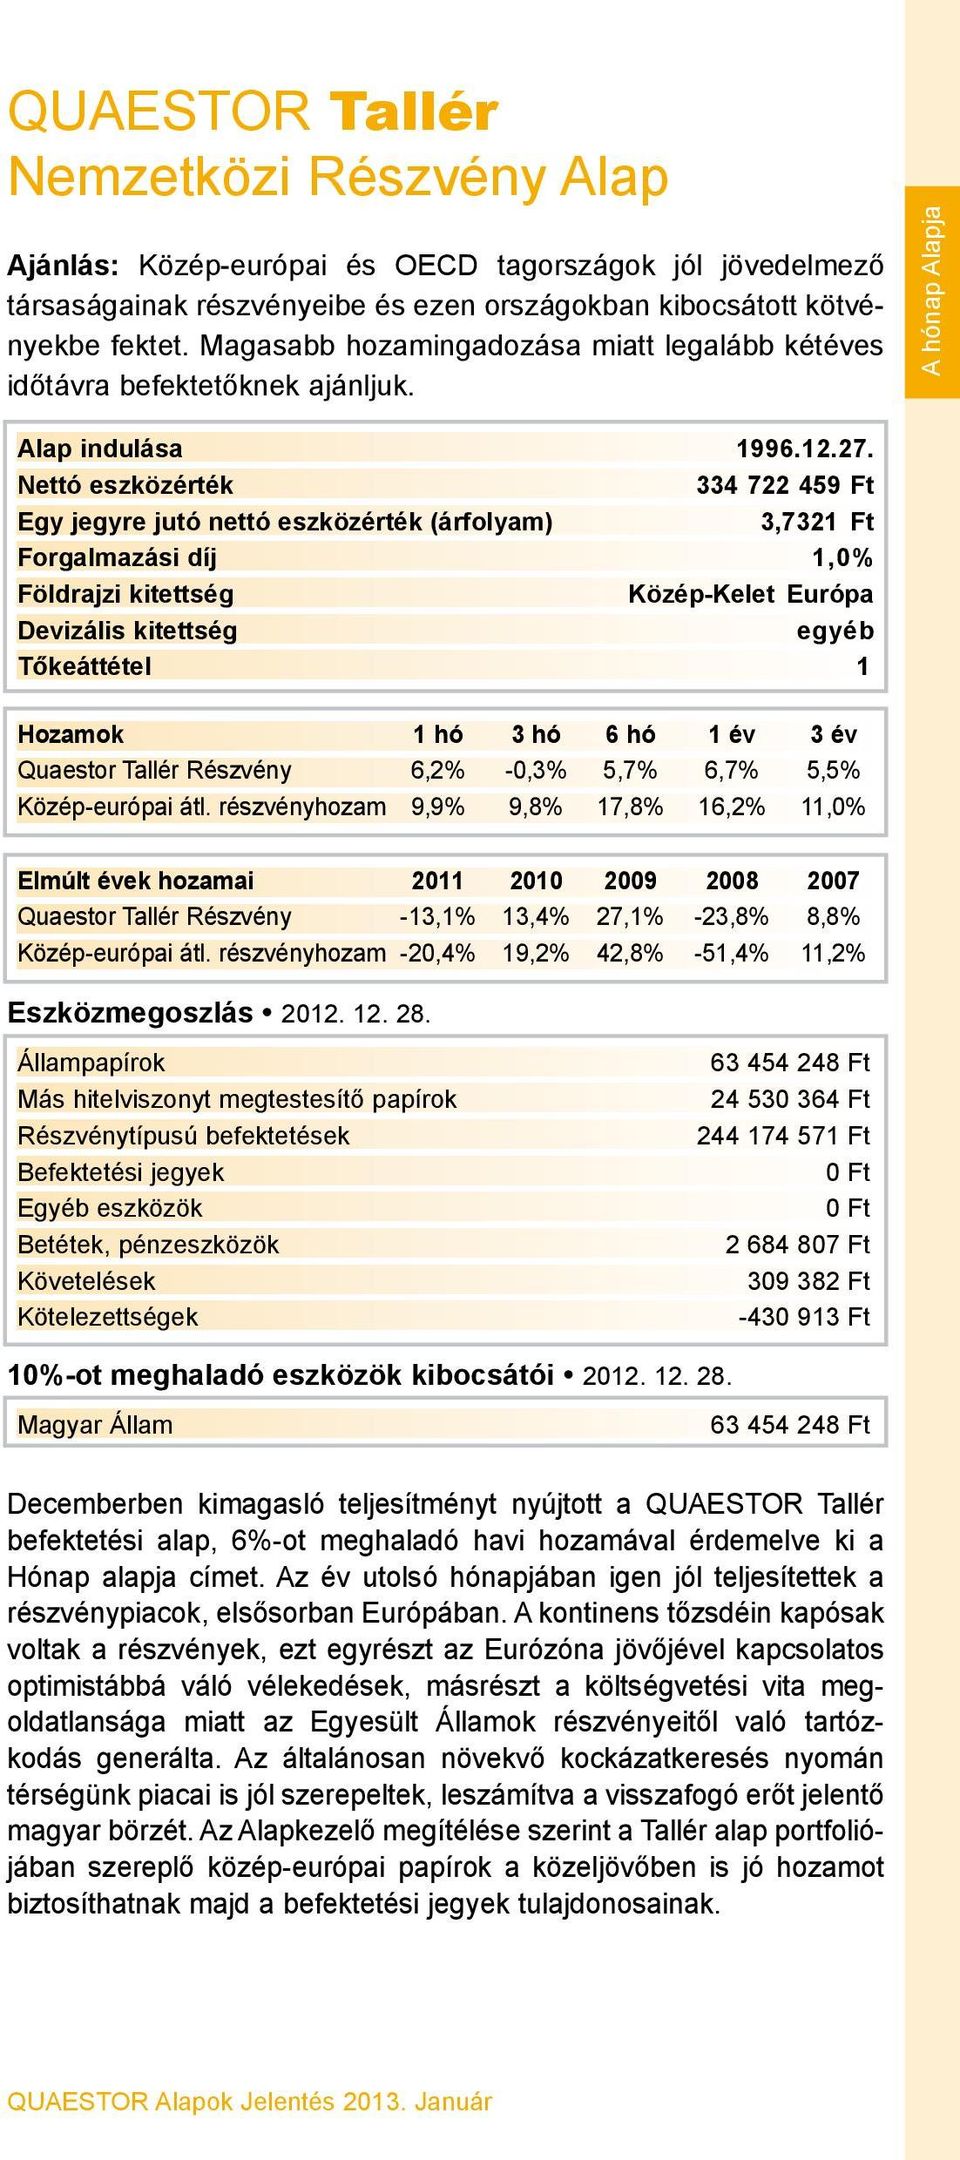 334 722 459 Ft 3,7321 Ft Forgalmazási díj 1,0% Közép-Kelet Európa egyéb Quaestor Tallér Részvény 6,2% -0,3% 5,7% 6,7% 5,5% Közép-európai átl.